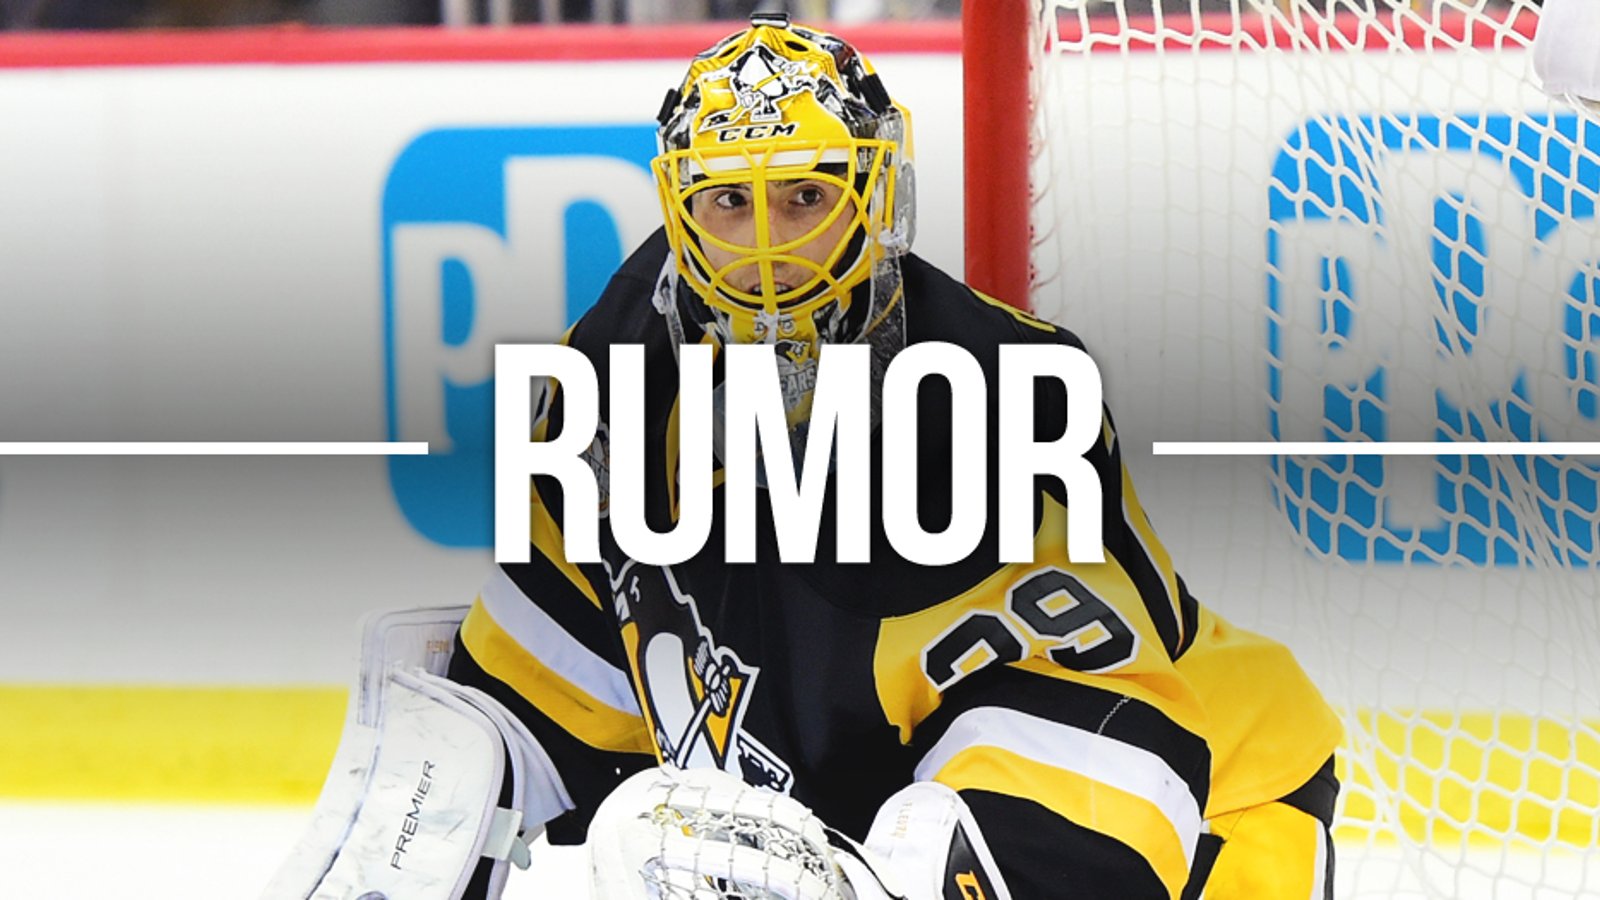 Rumor: Bombshell dropped by NHL insider regarding Marc-Andre Fleury.